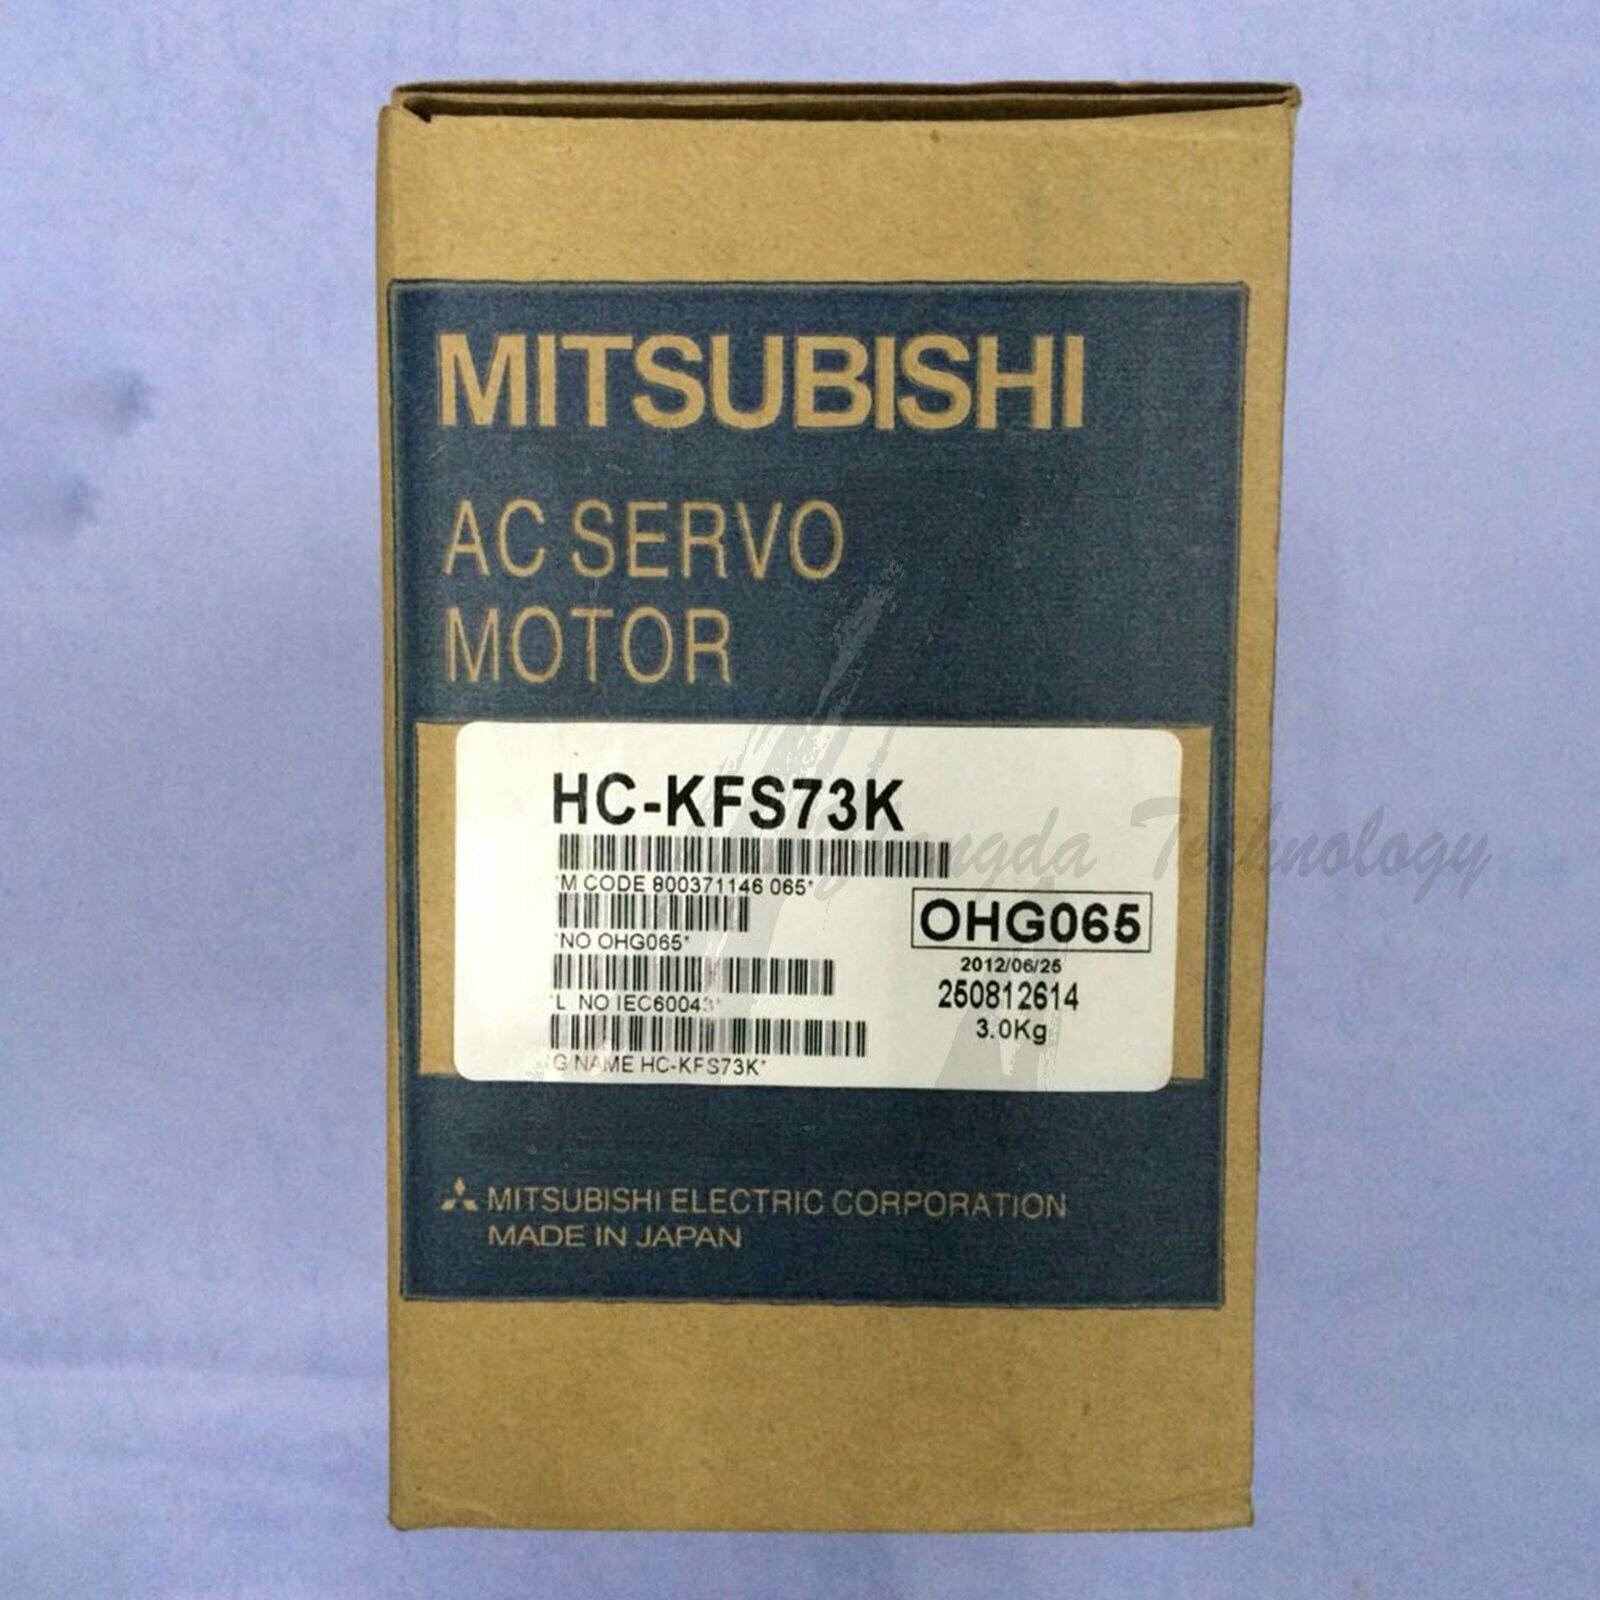 Mitsubishi Servo Motor, 0.75 kW, 103 V ac, 3000 rpm，HC-KFS73K